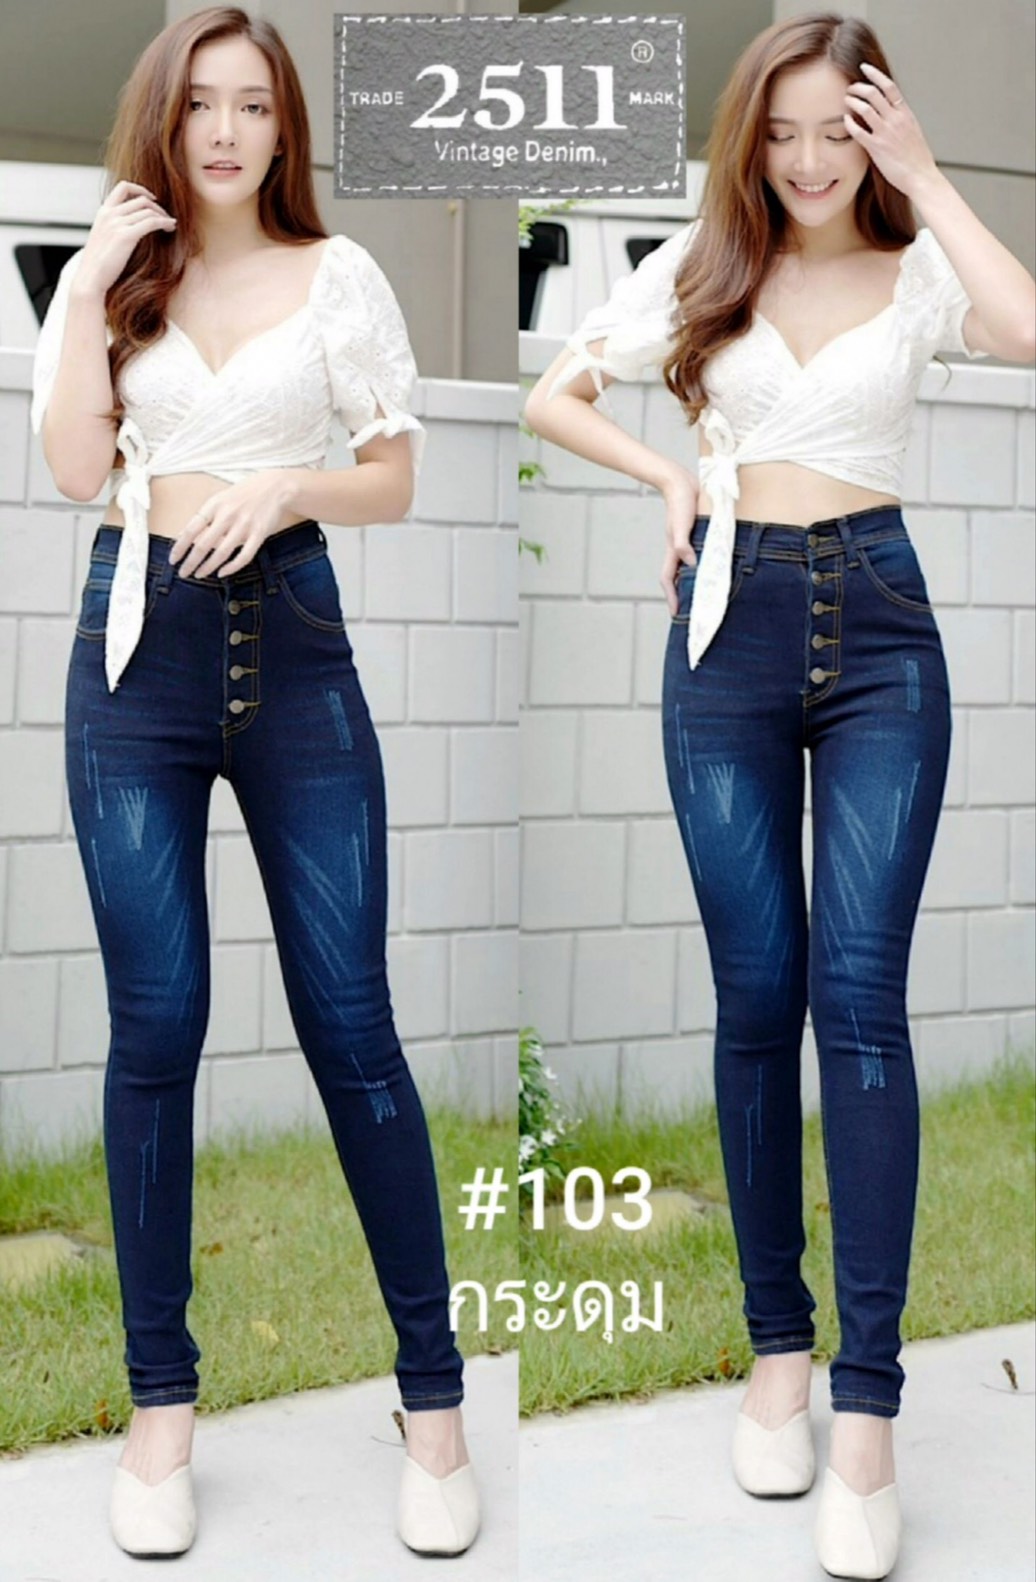 [[ถูกที่สุด]]2511 Vintage Denim Jeans by GREAT กางเกงยีนส์ ผญ กางเกงแฟชั่นผู้หญิง กางเกงยีนส์ยืด เข้ารูป ทรงสวย ขาเรียว  เข้ารูปสุดๆใส่แล้วสวยจริงๆค่ะ